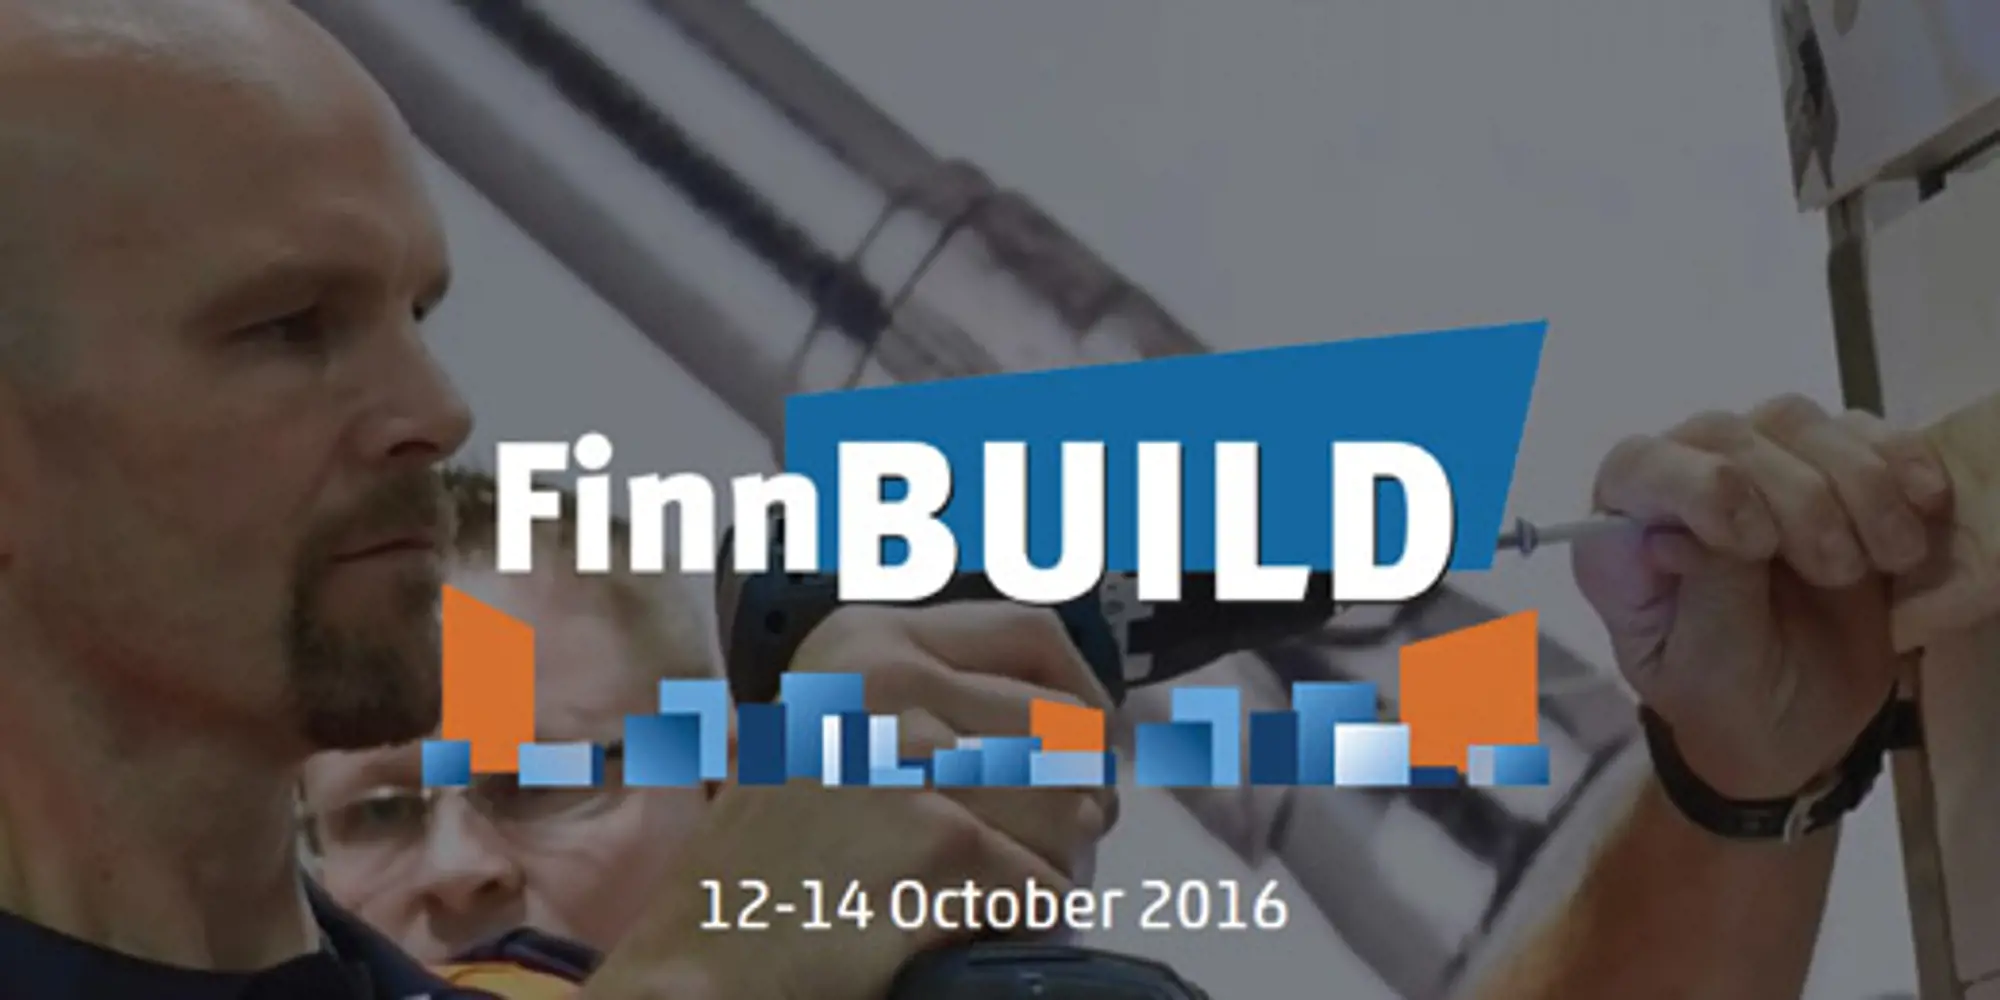 FinnBuild 2016